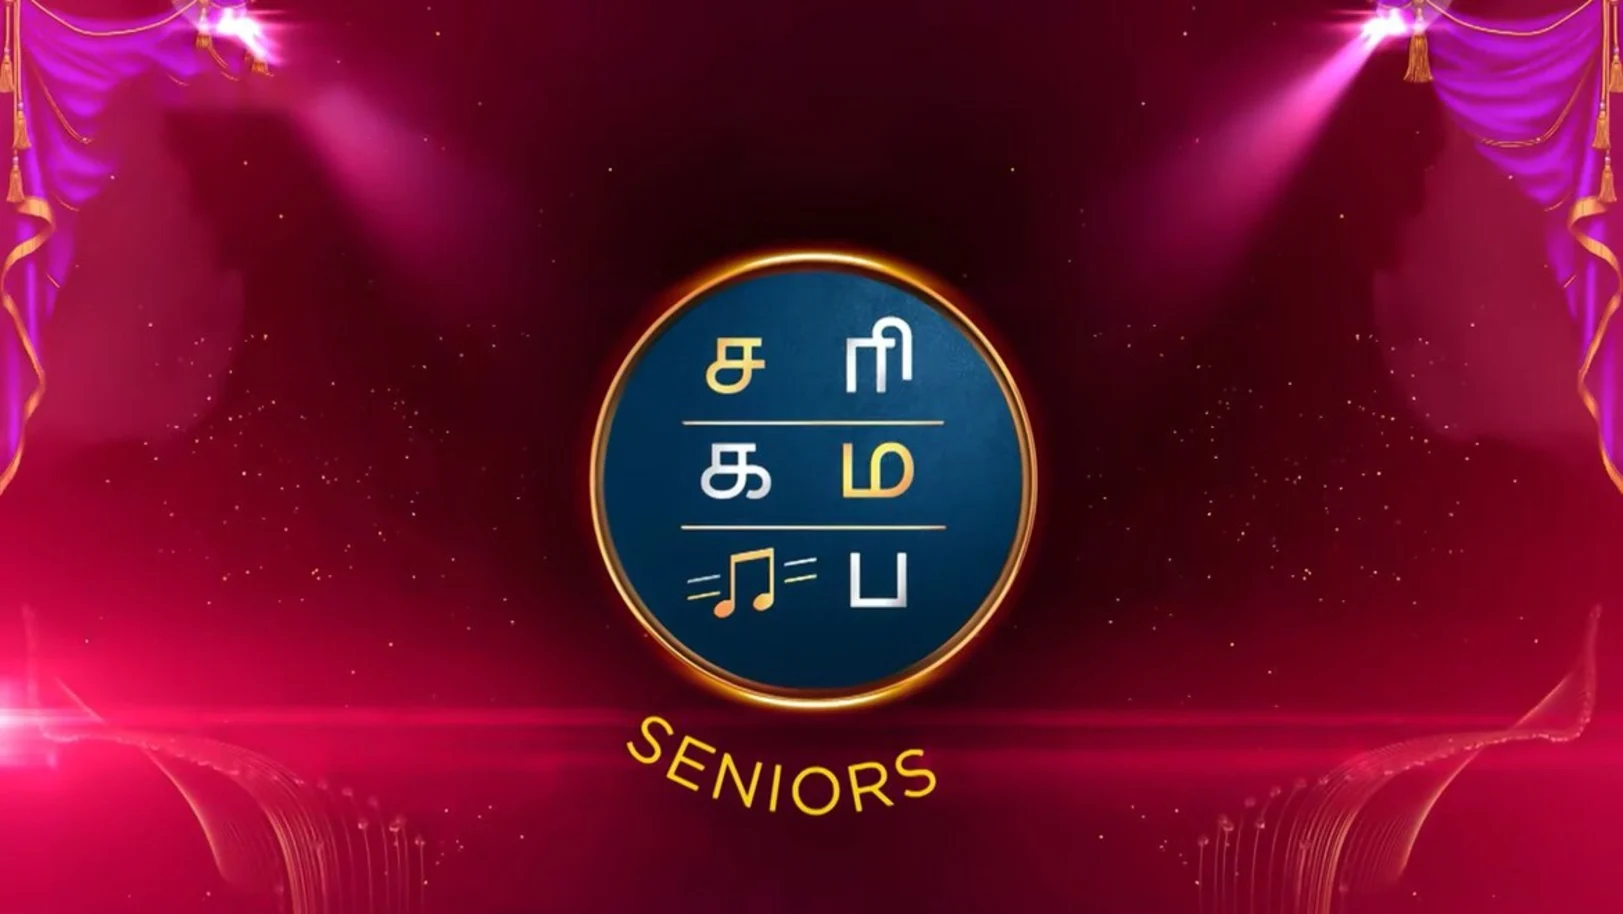 Sa Re Ga Ma Pa Seniors Streaming Now On Zee Tamil